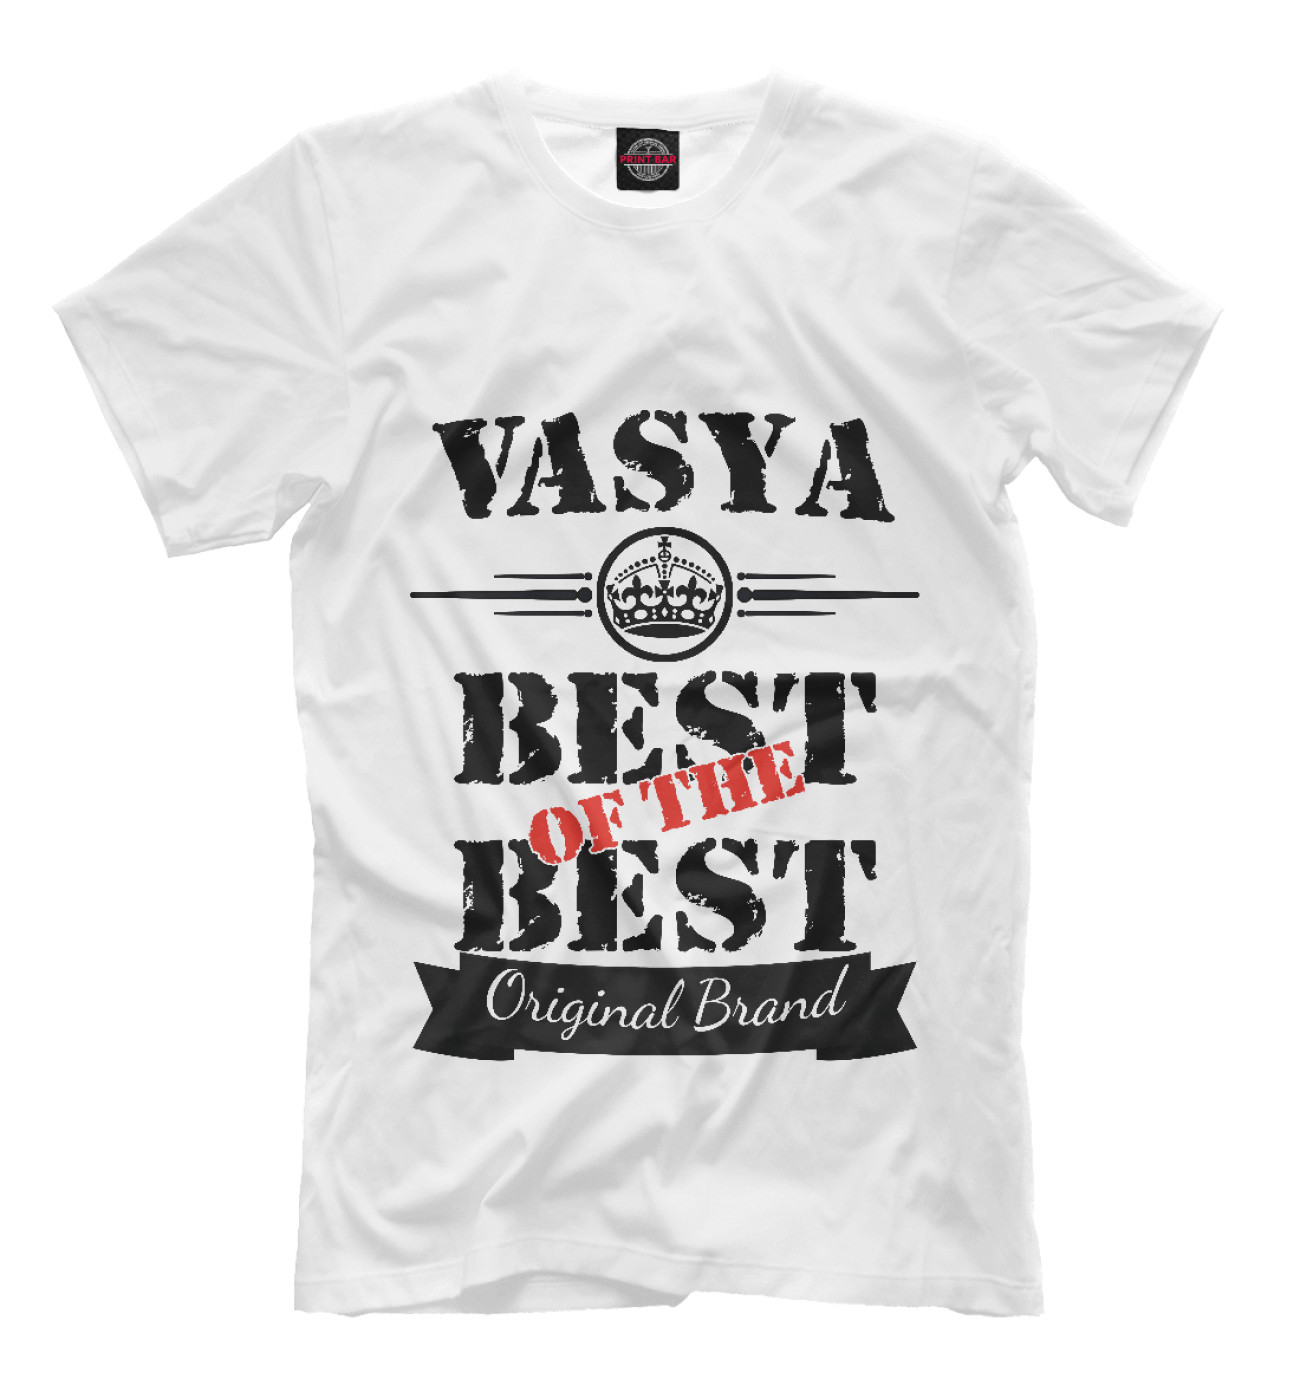 Мужская Футболка Вася Best of the best (og brand), артикул: VSL-895649-fut-2